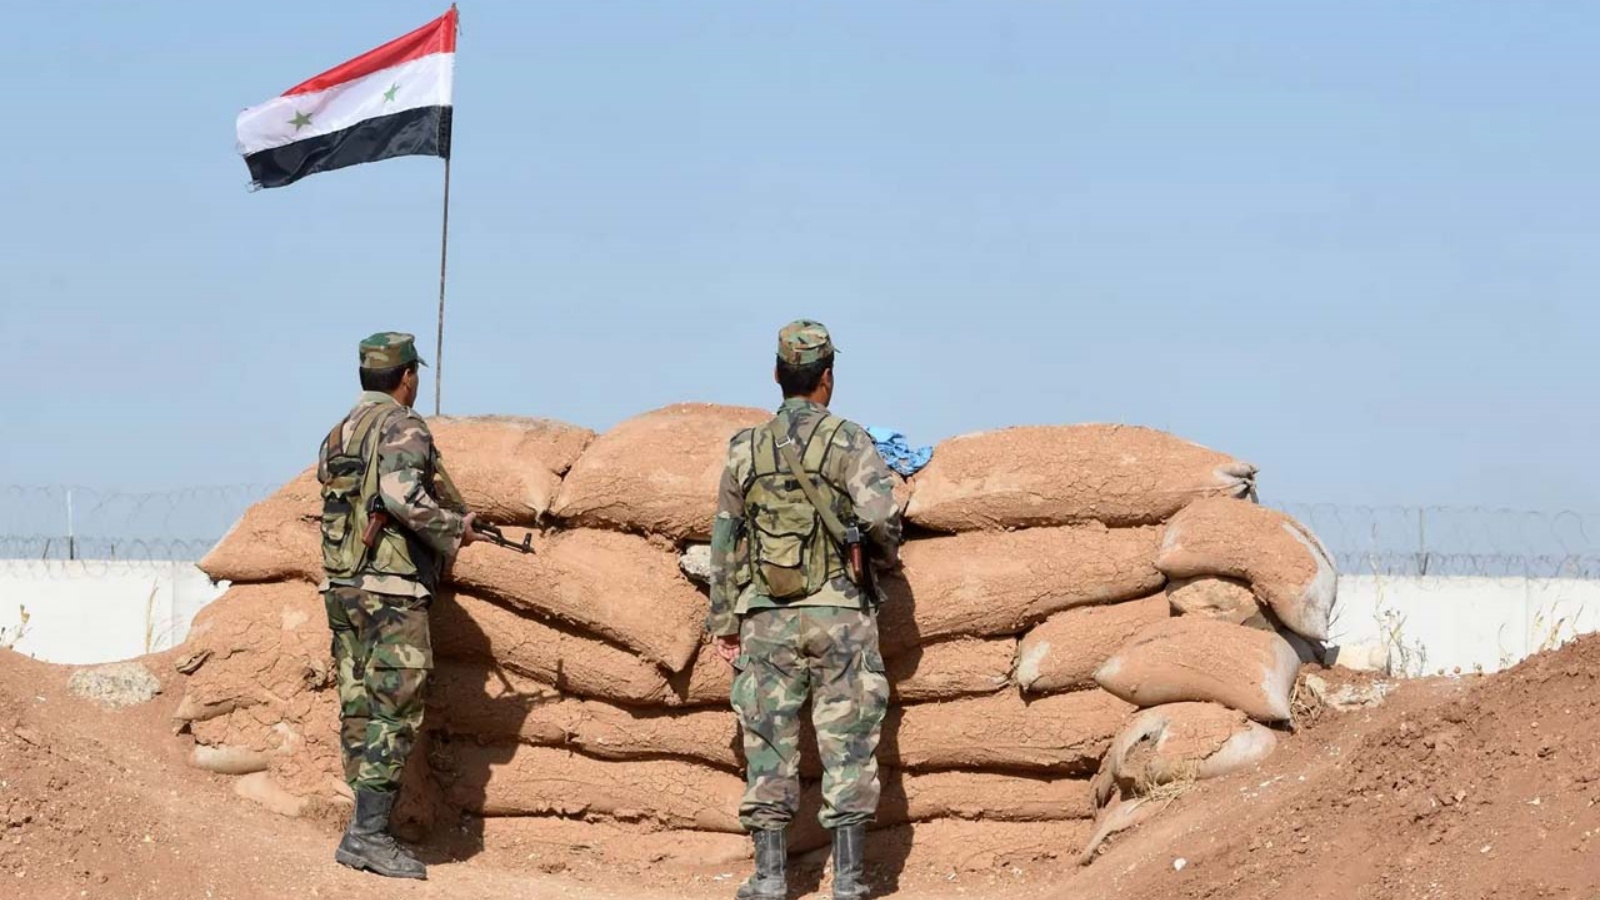 قوات النظام السوري تسيطر على موقع في مدينة كوباني الريفية، المعروفة أيضاً باسم عين العرب، على طول الحدود مع تركيا.